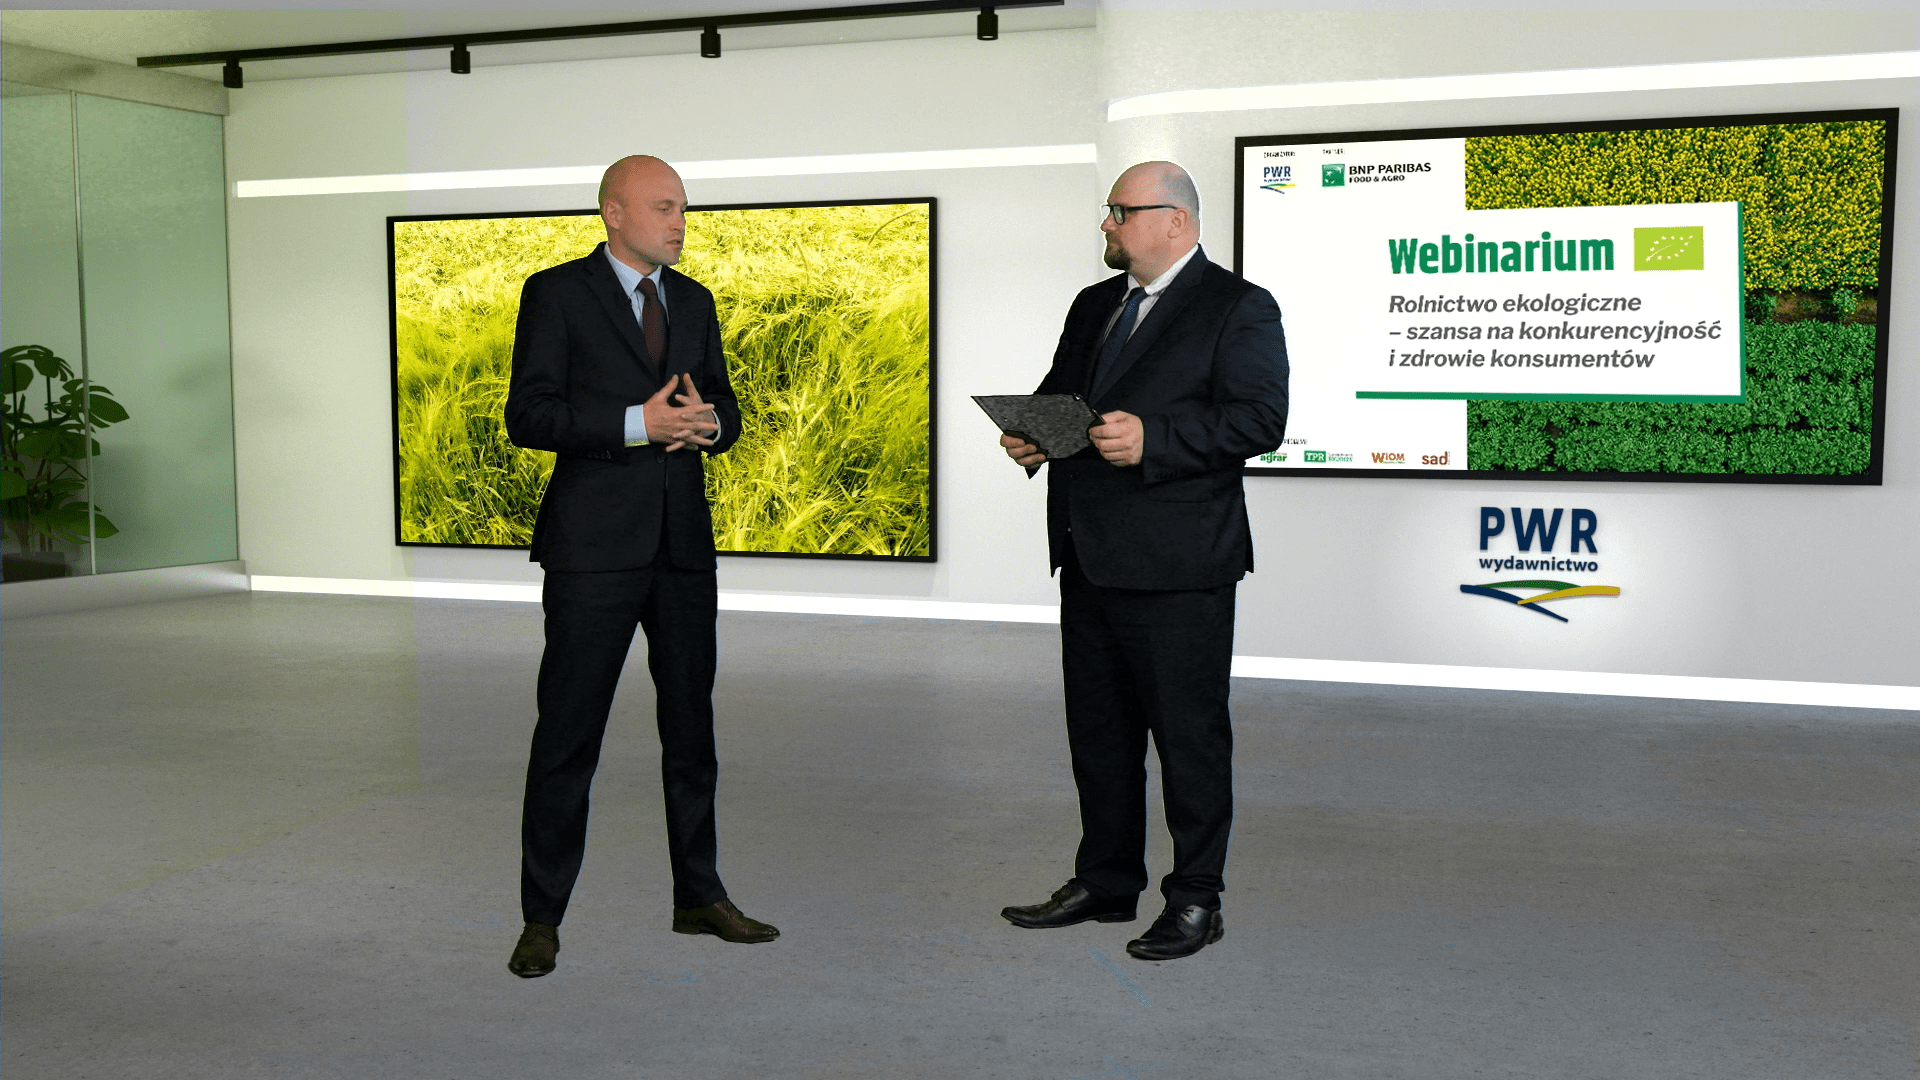 Pierwszym prelegentem, którego mieliśmy okazję gościć w studio w Poznaniu był Maciej Piskorski z BNP Paribas, który podkreślił, że konferencja ma na celu pokazanie rolnikom plusów i minusów rolnictwa ekologicznego oraz możliwości rozwoju produkcji i perspektyw sprzedaży.